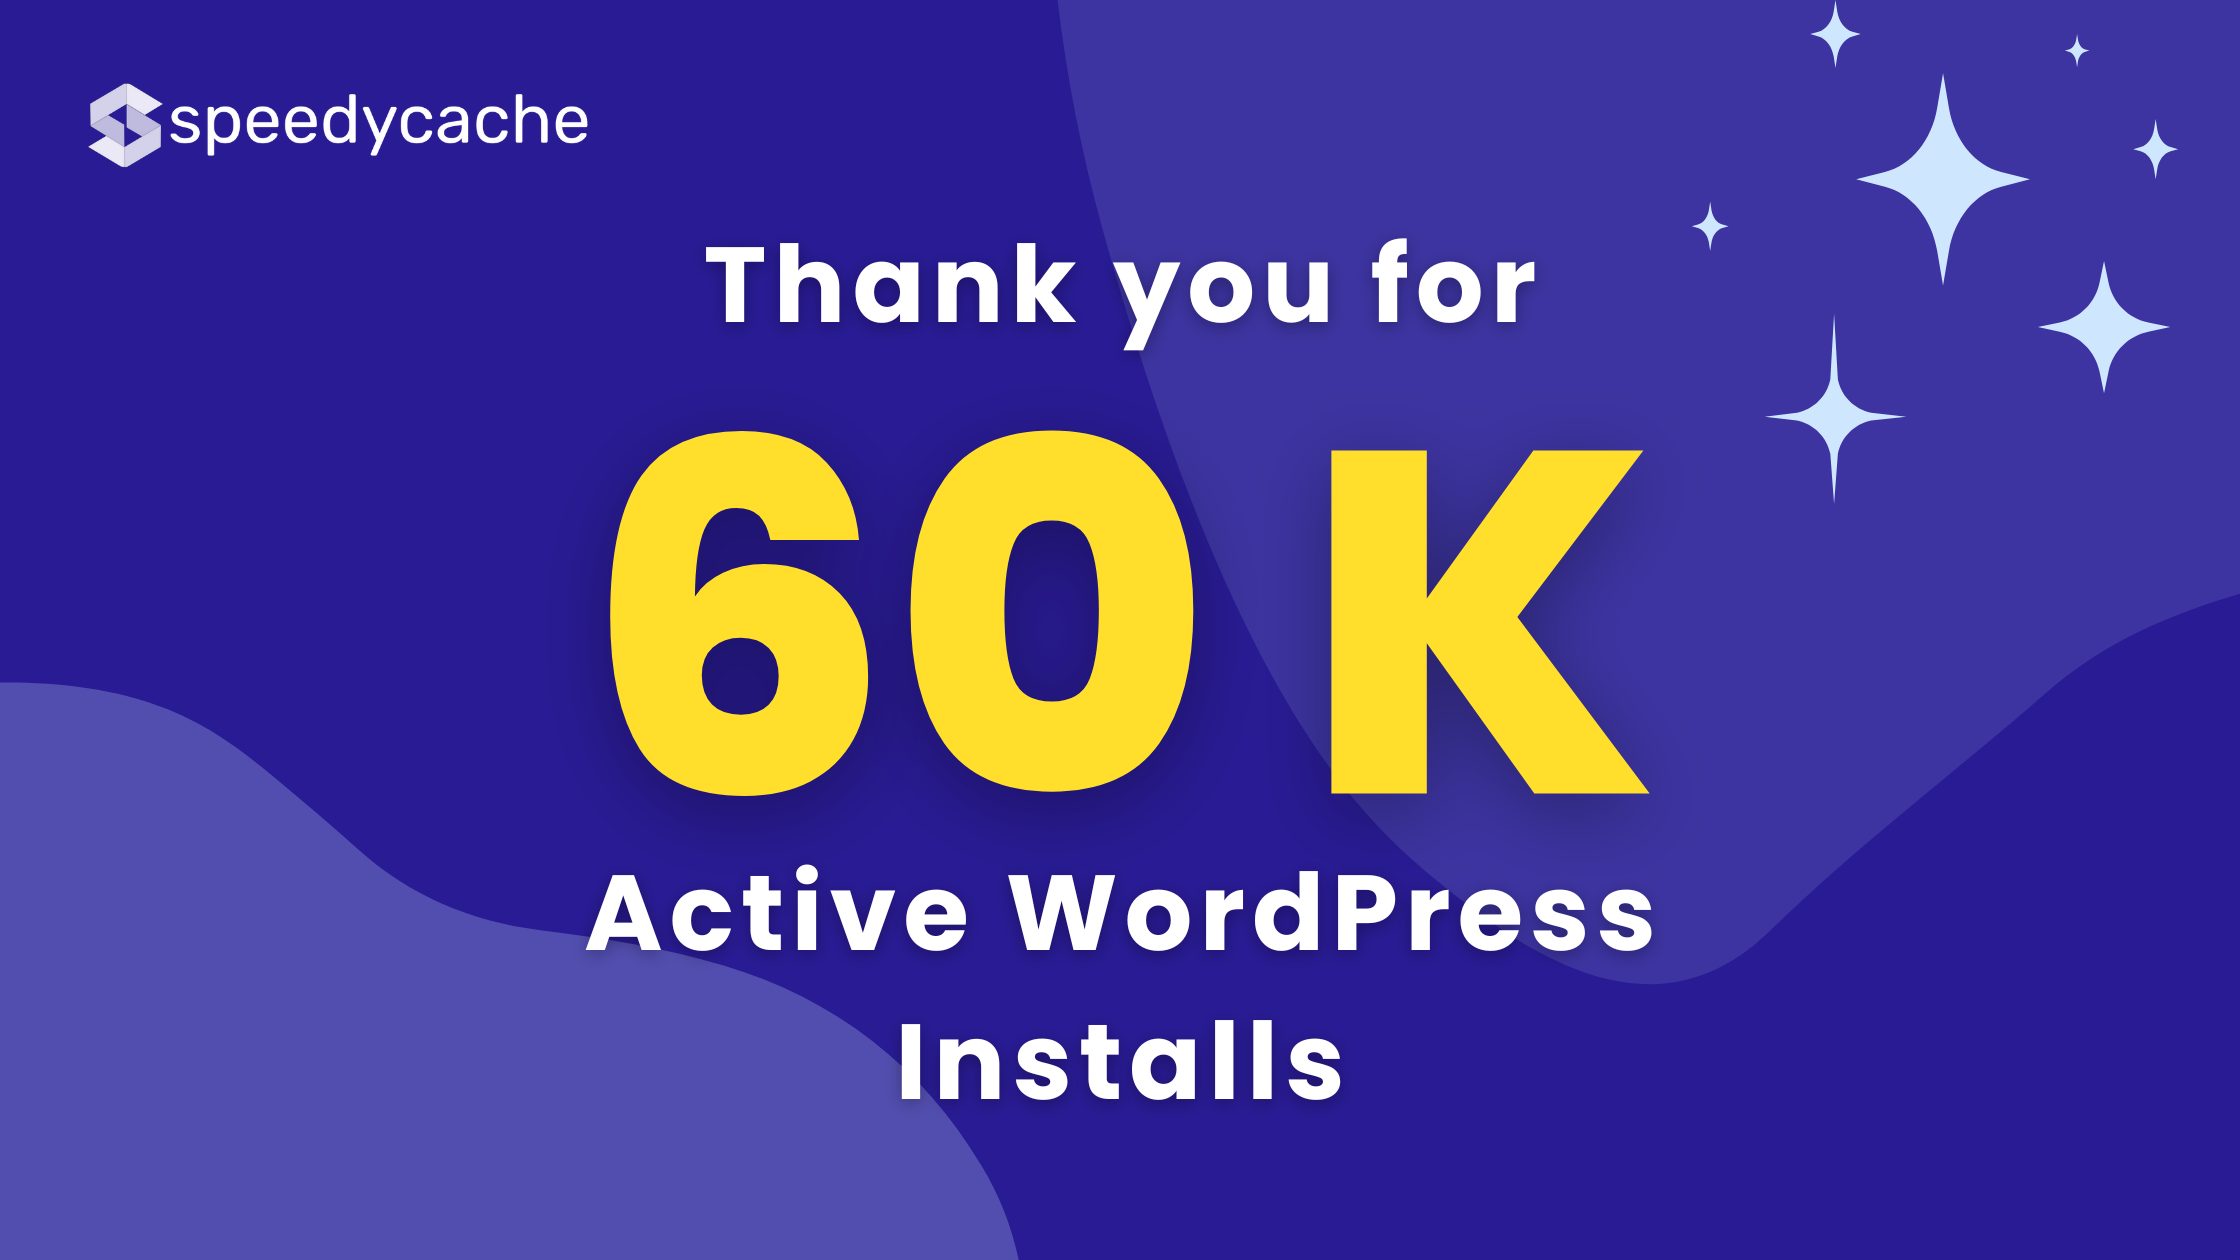 SpeedyCache crossed 60k Active WordPress installs